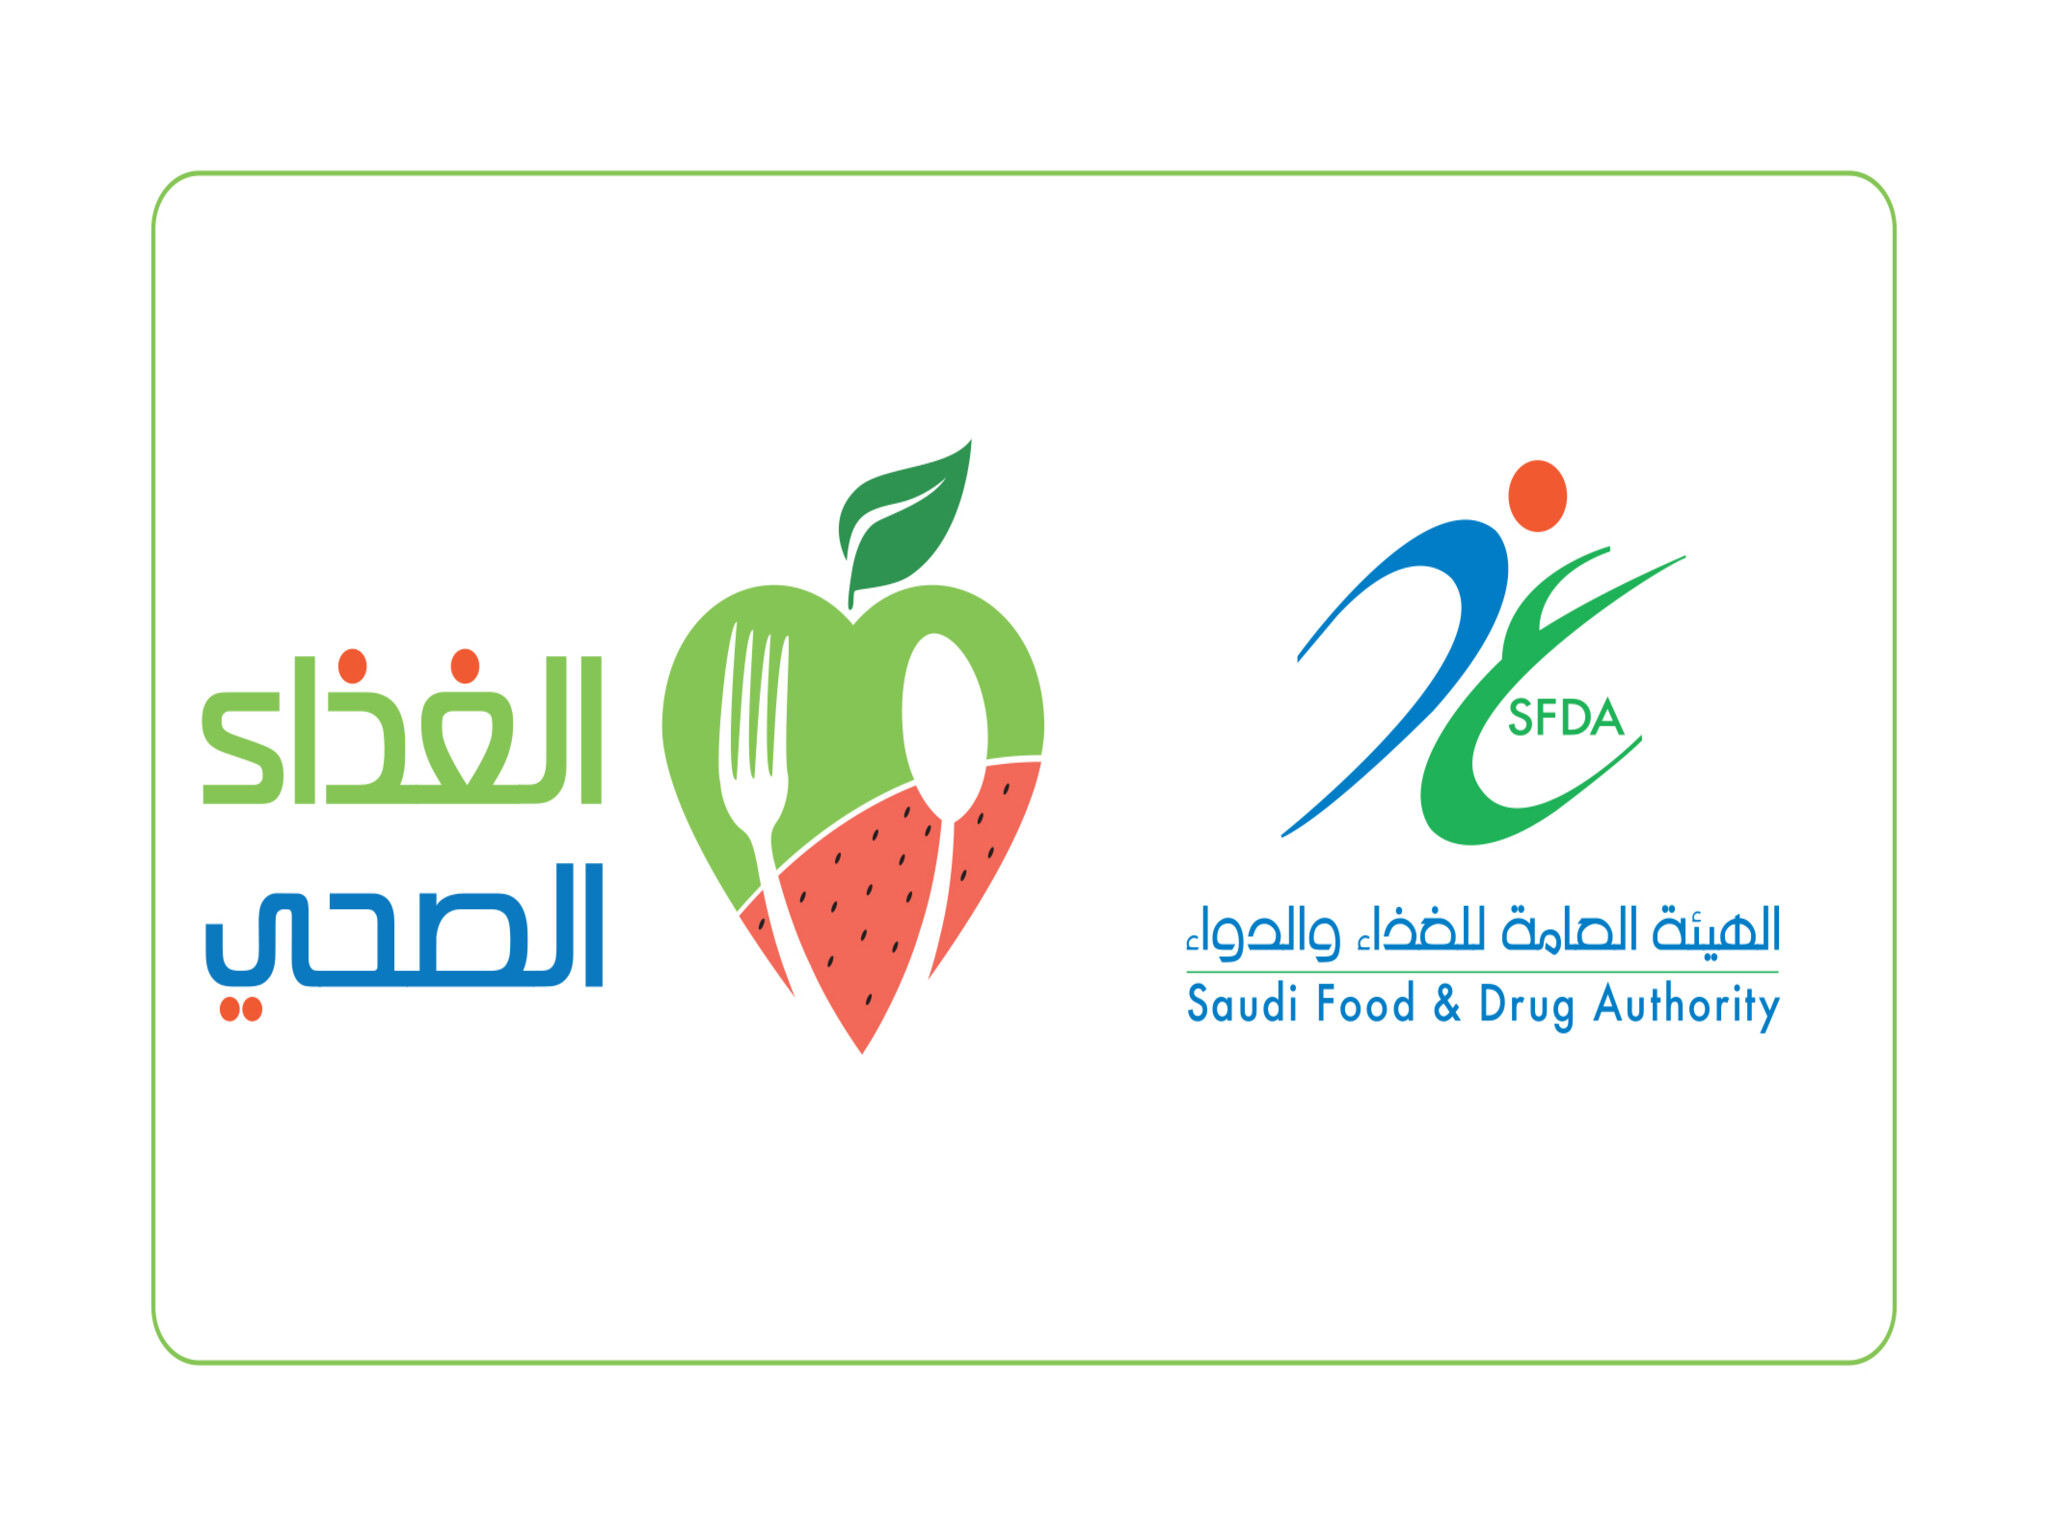 الهيئة العامة للغذاء والدواء تطلق مبادرة توعوية للحجاج بـ 9 لغات